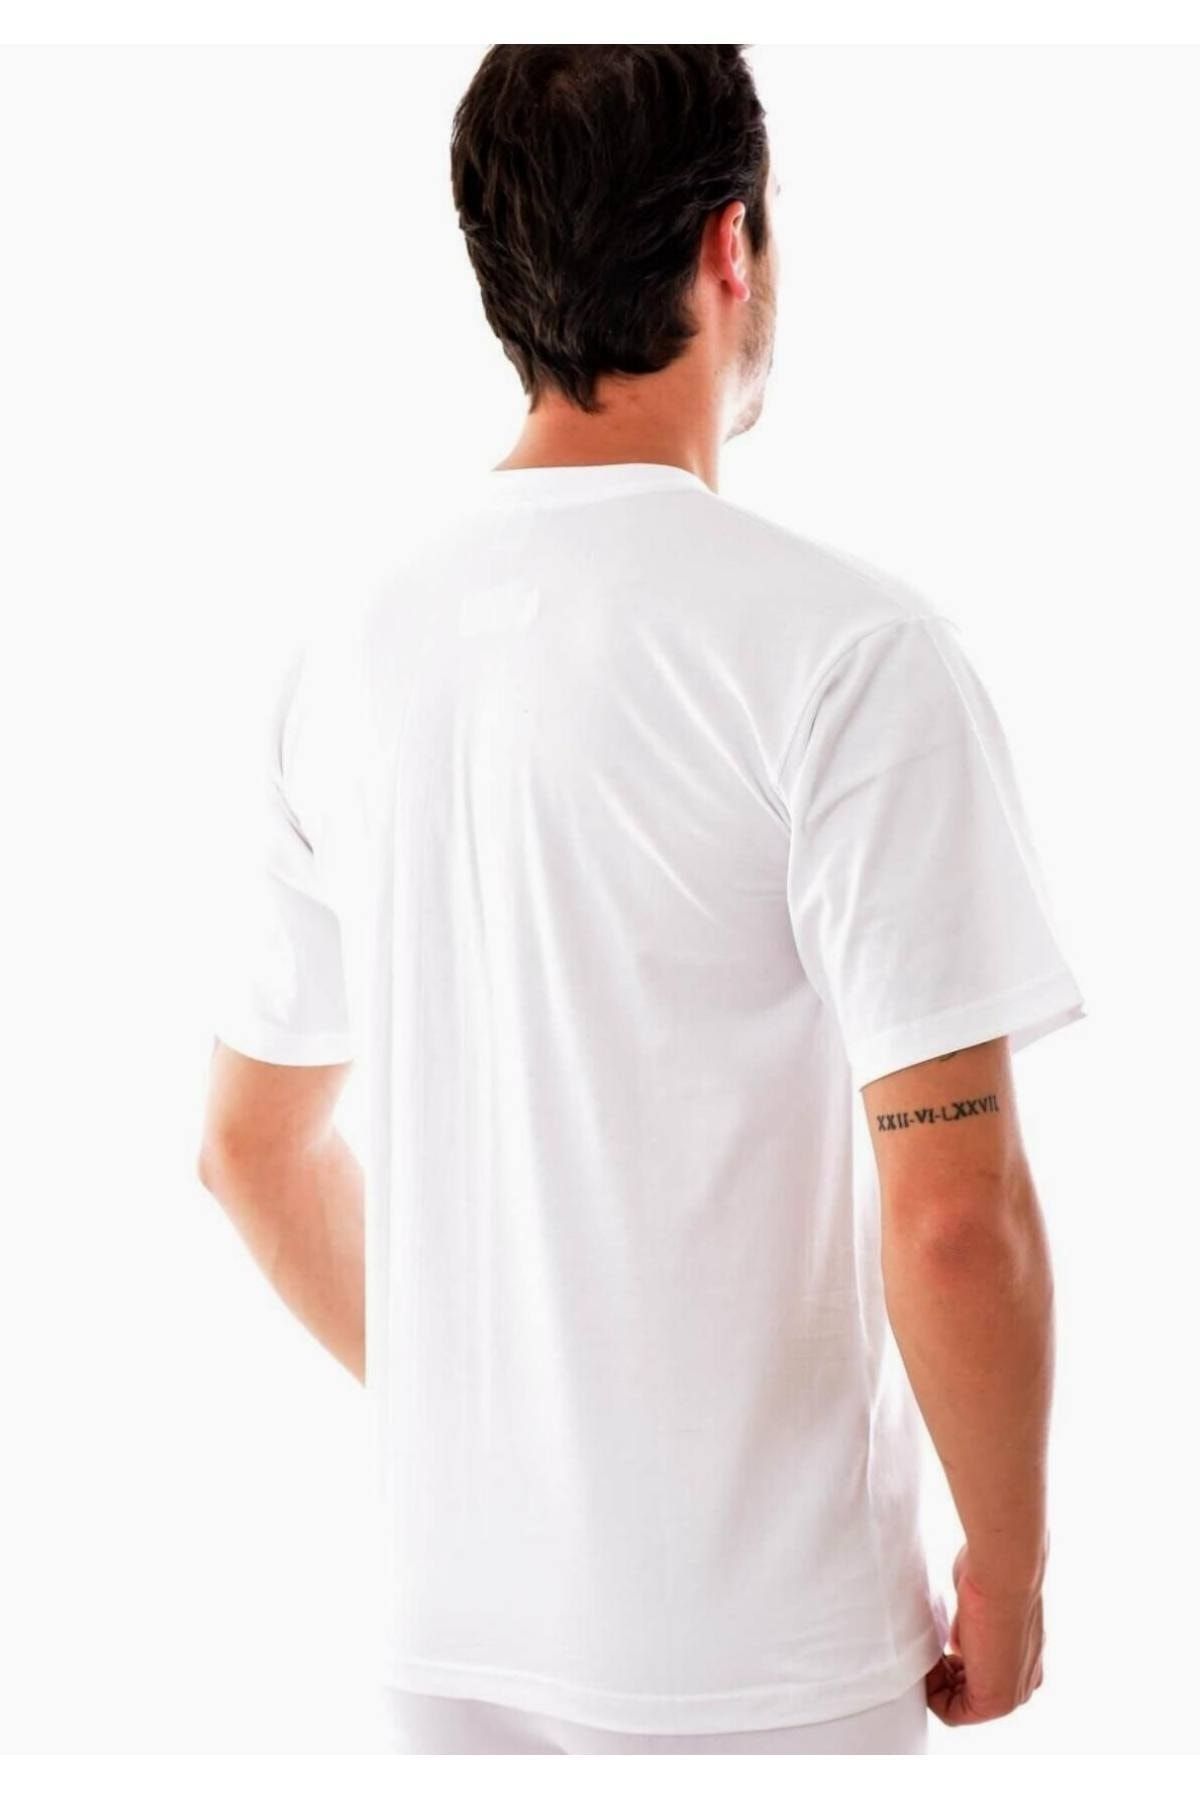 Tutku پک ۶ عددی زیر پیراهنی مردانه مدل یقه گرد ساده